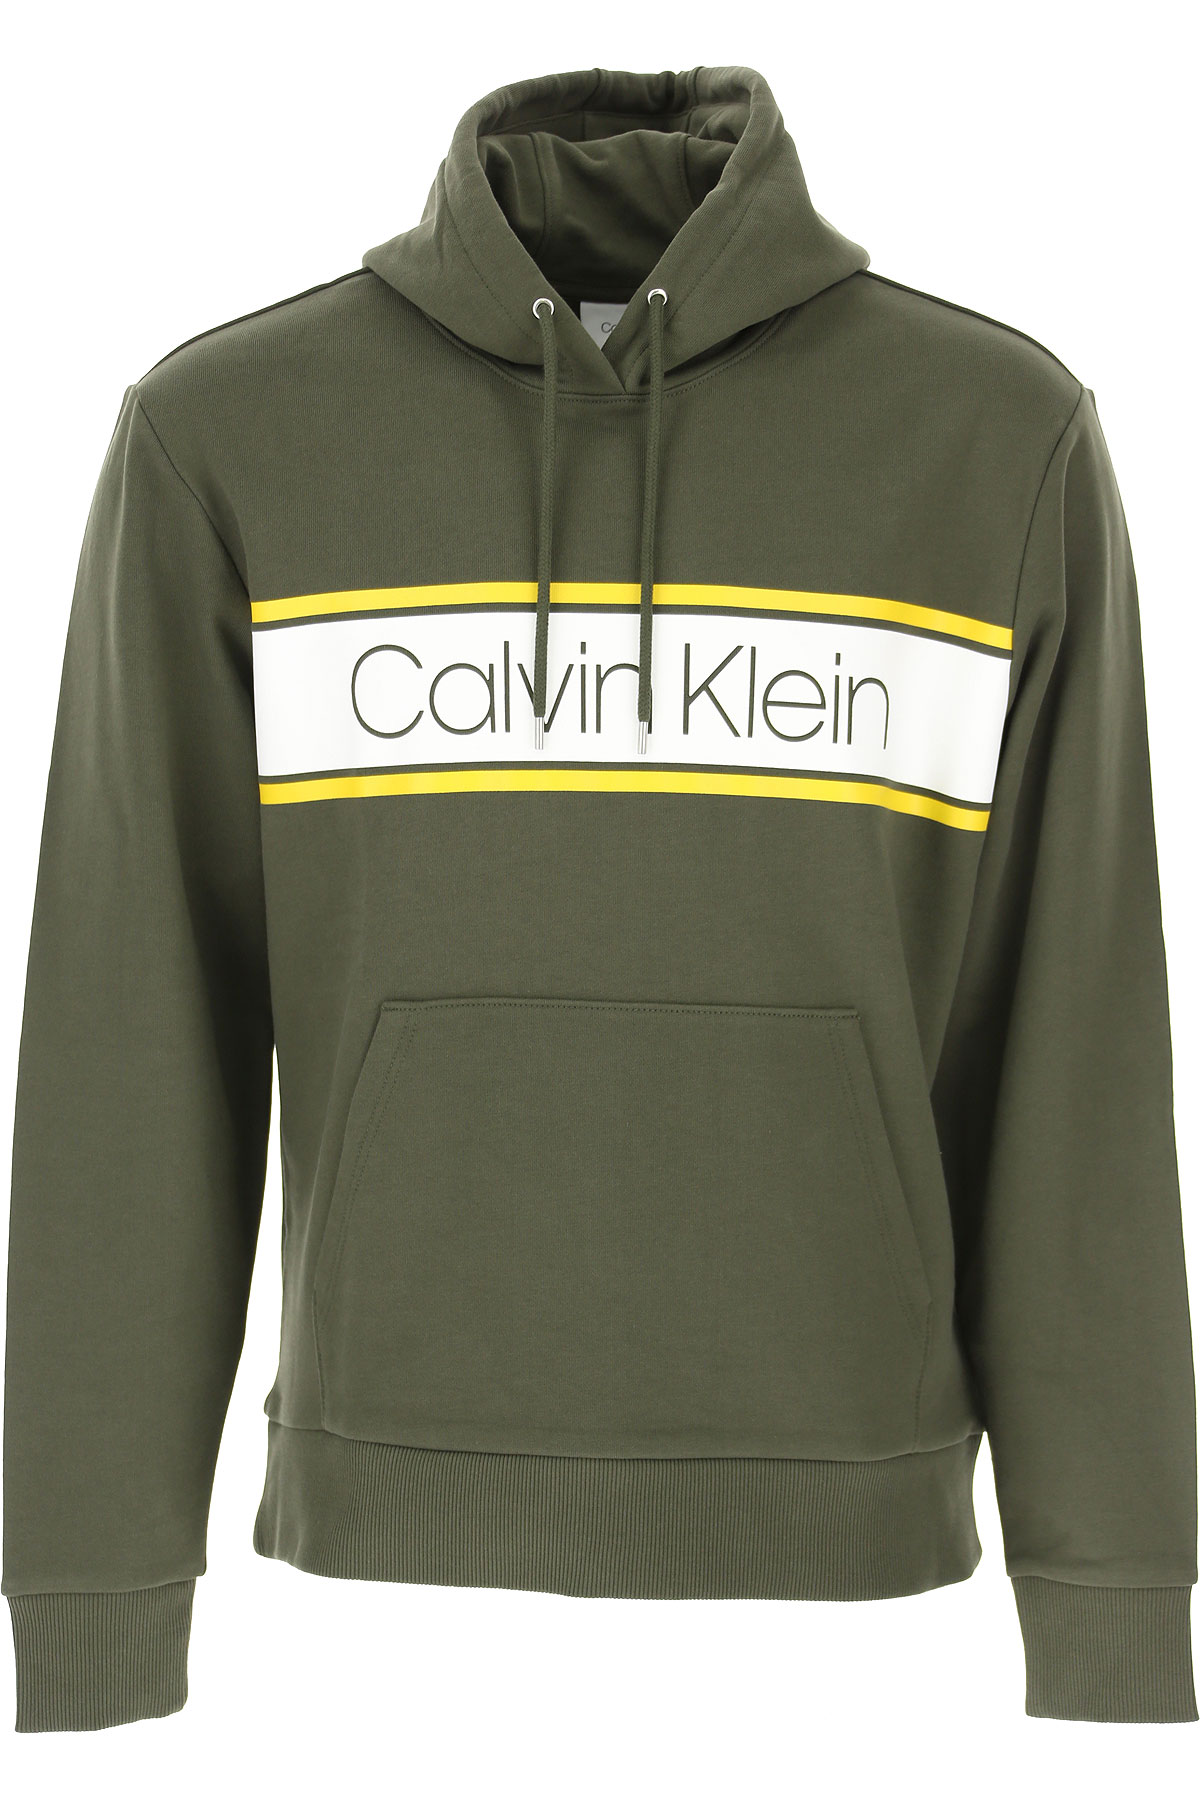 Calvin Klein Sweatshirt für Herren, Kapuzenpulli, Hoodie, Sweats Günstig im Sale, Dunkel Olivengrün, Baumwolle, 2017, L M